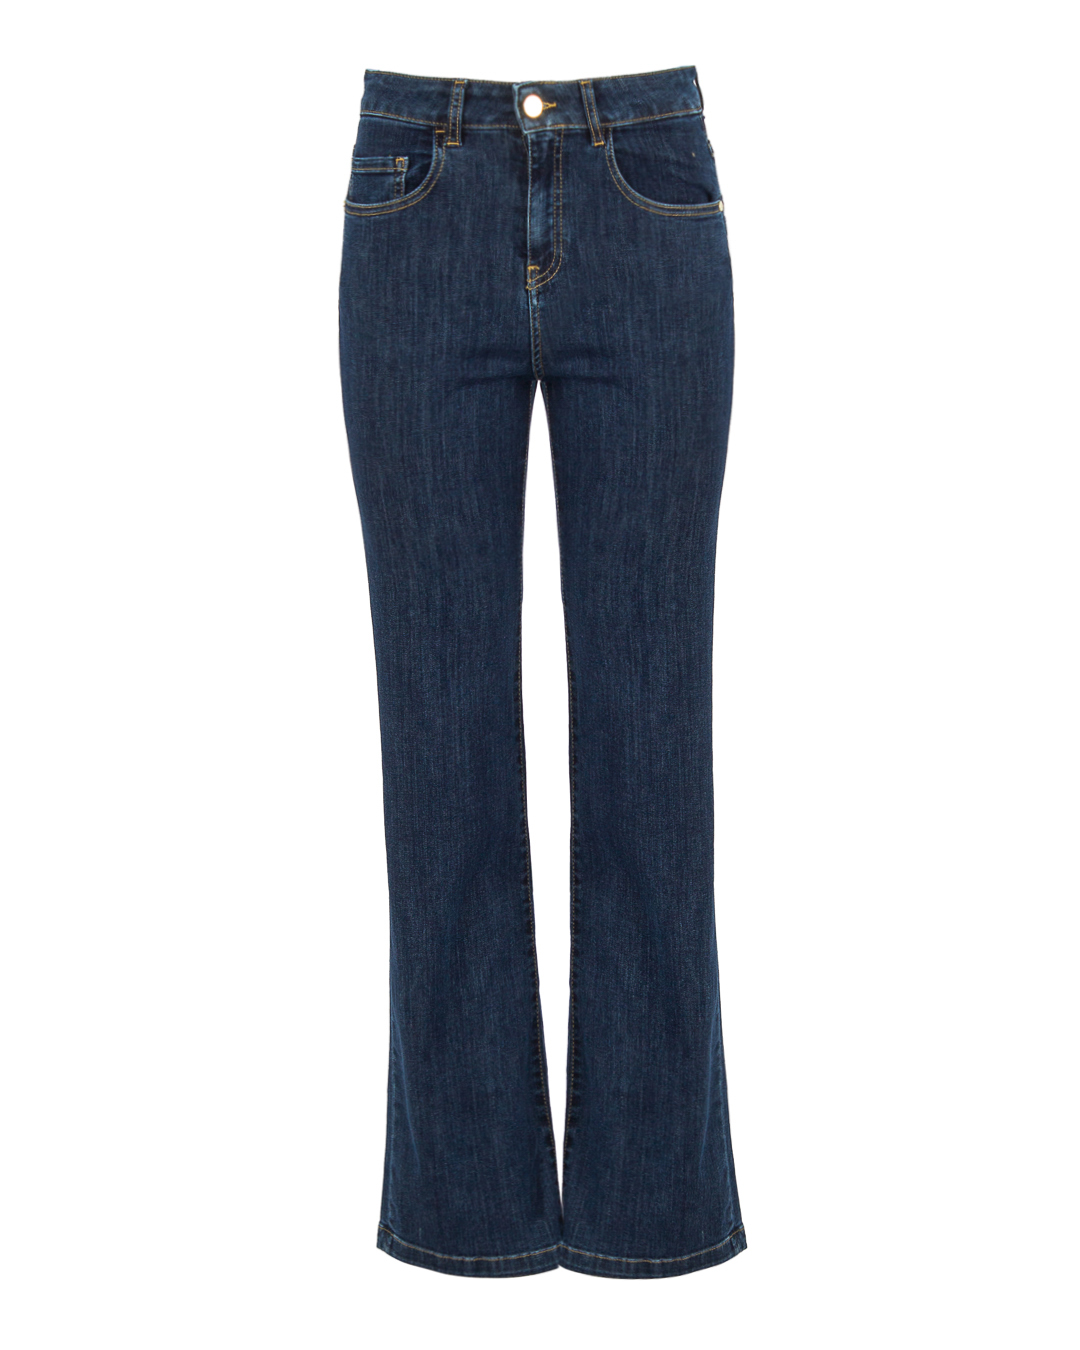 джинсы KAOS PP6BL028 голубой 26, размер 26 - фото 1